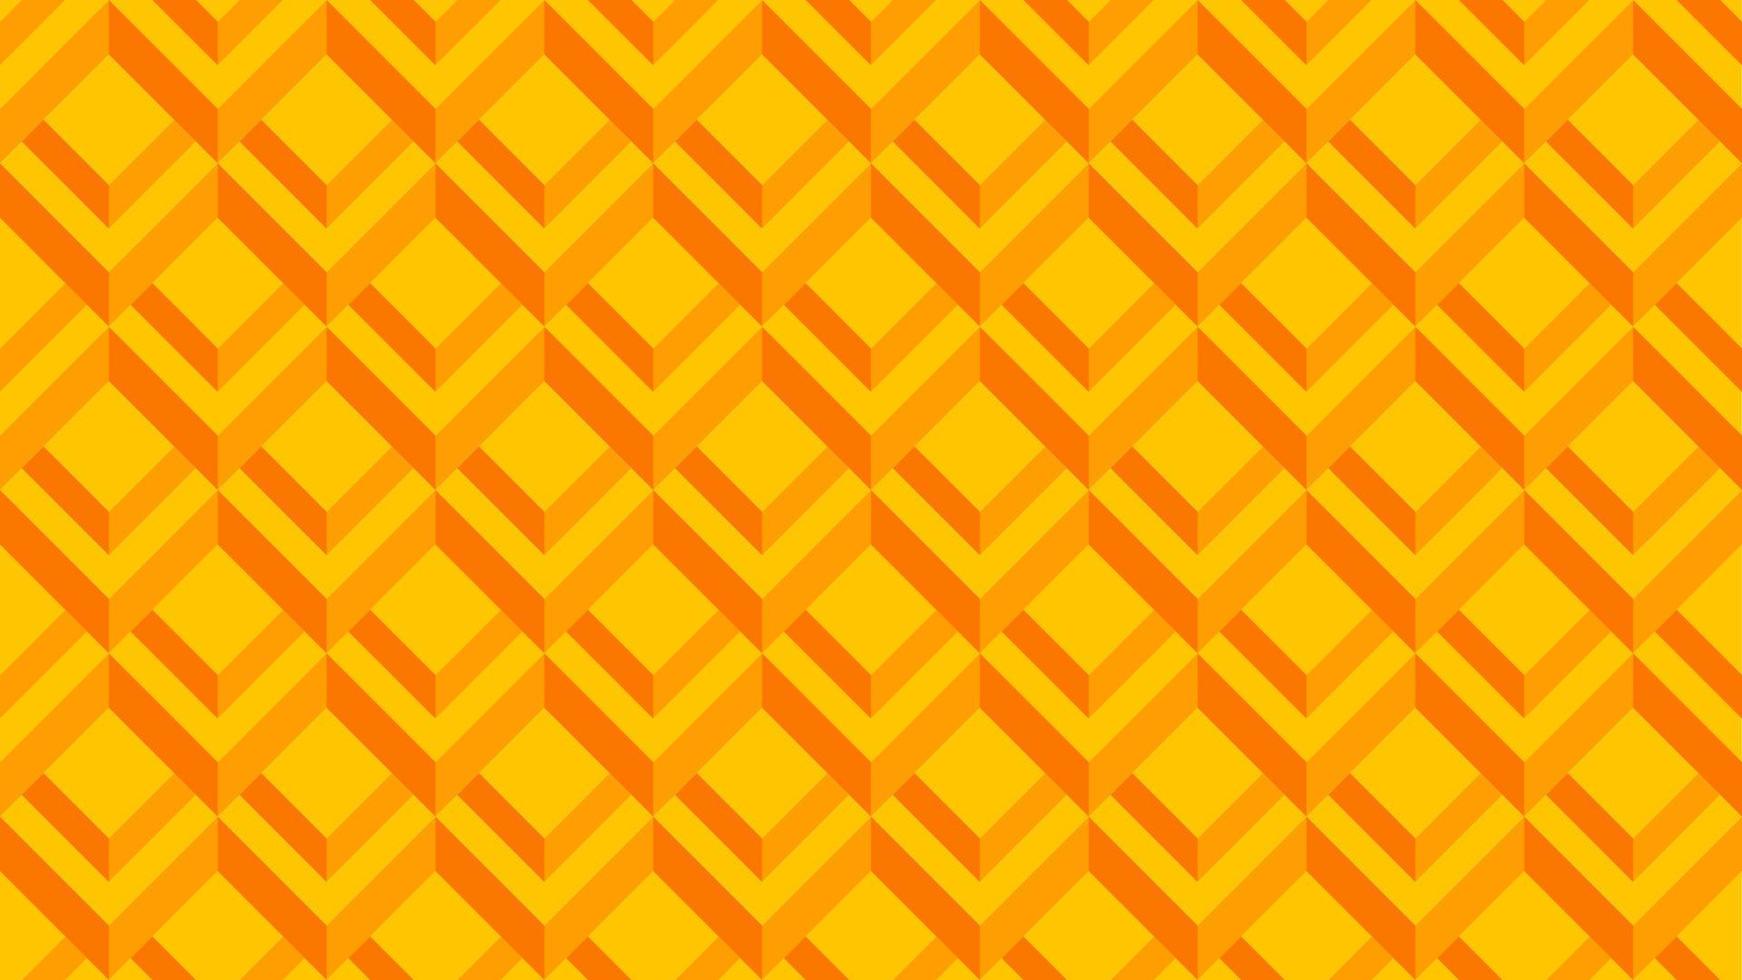 patroon van 3d optisch illusie. patroon van illusie blok. vector illustratie van 3d oranje vierkant. meetkundig ongrijpbaar voor ontwerp grafisch, achtergrond, behang, lay-out of kunst